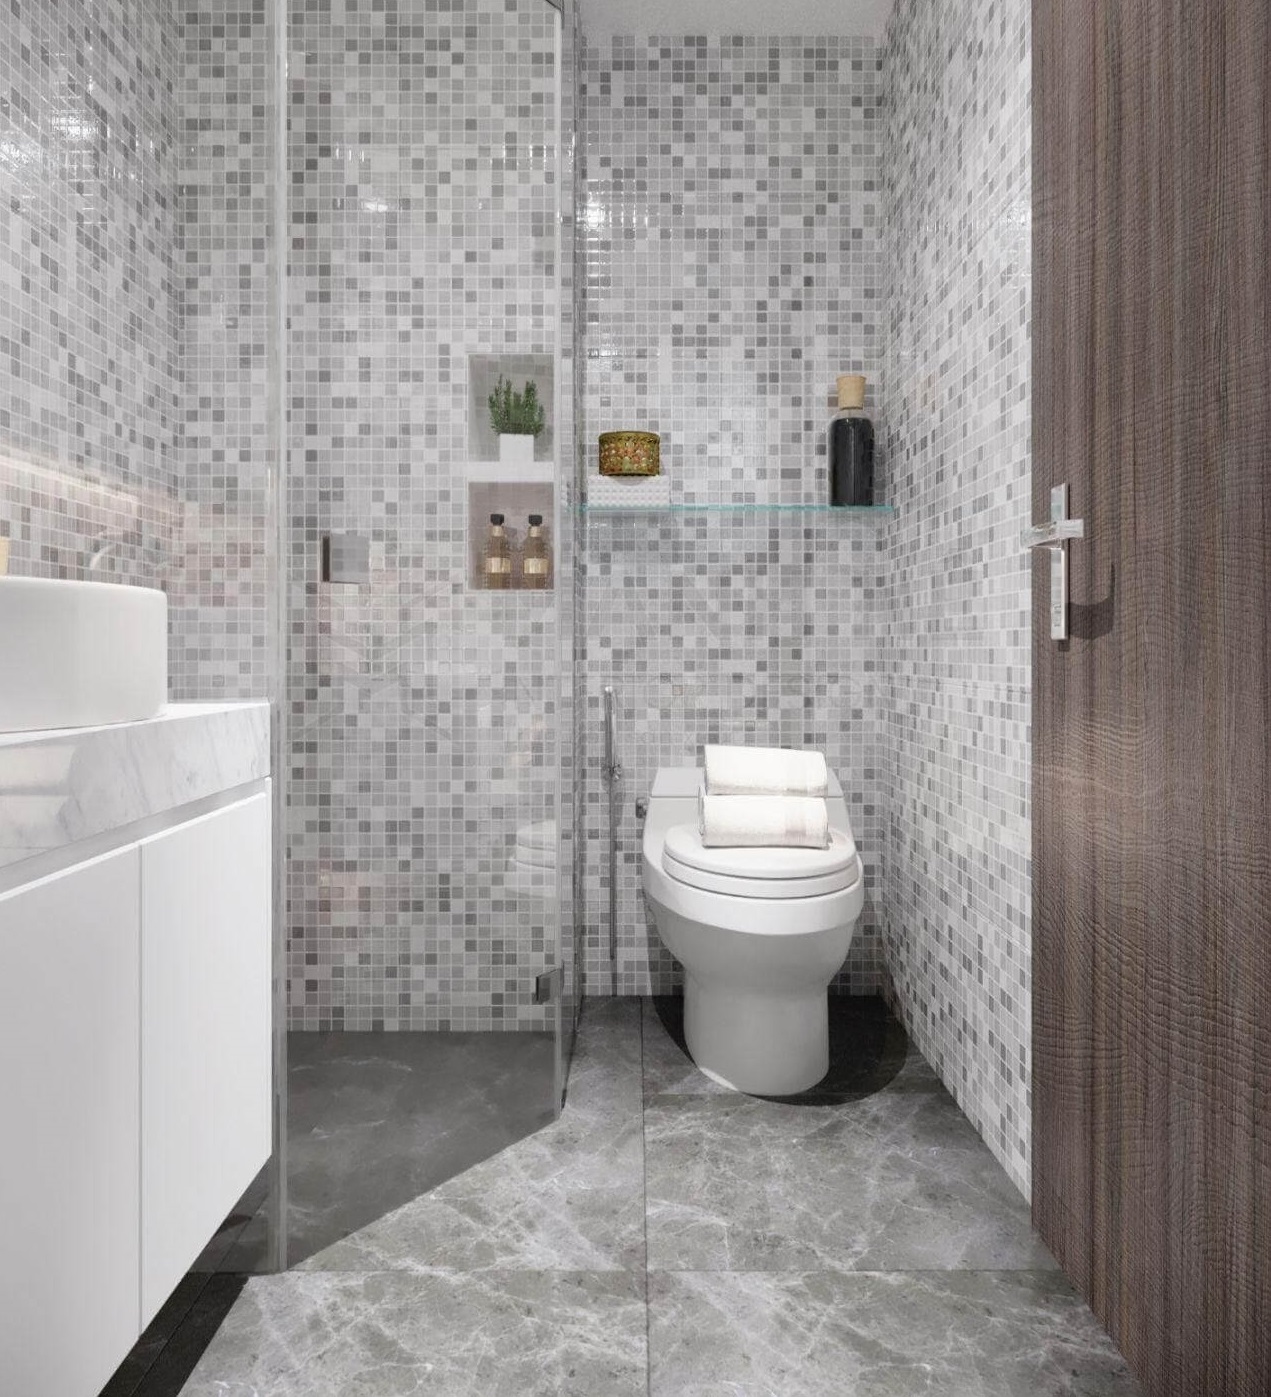 Nhà vệ sinh có kích thước tối thiểu khoảng 2.5 – 3.2 m2